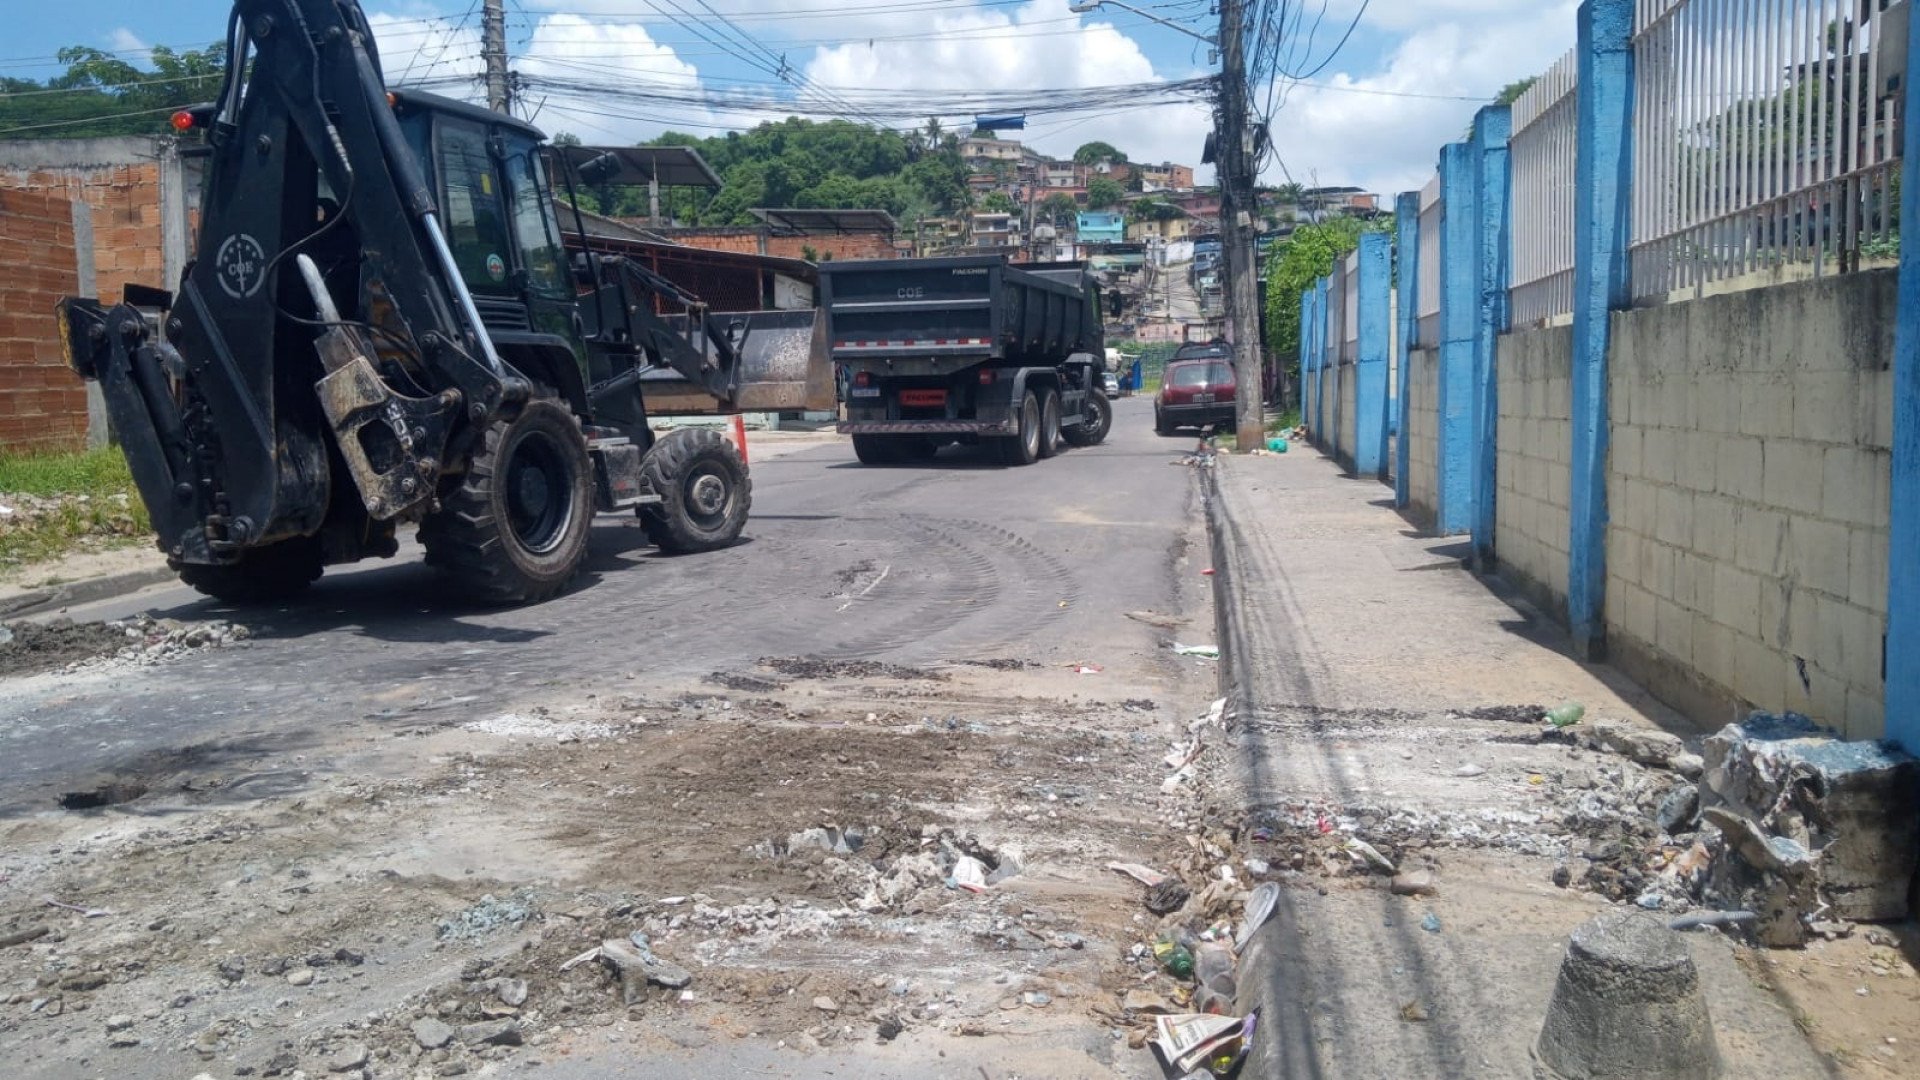 Agentes do Bope e do COE atuaram na remoção de barricadas no Complexo do Chapadão - Reprodução / @pmerj